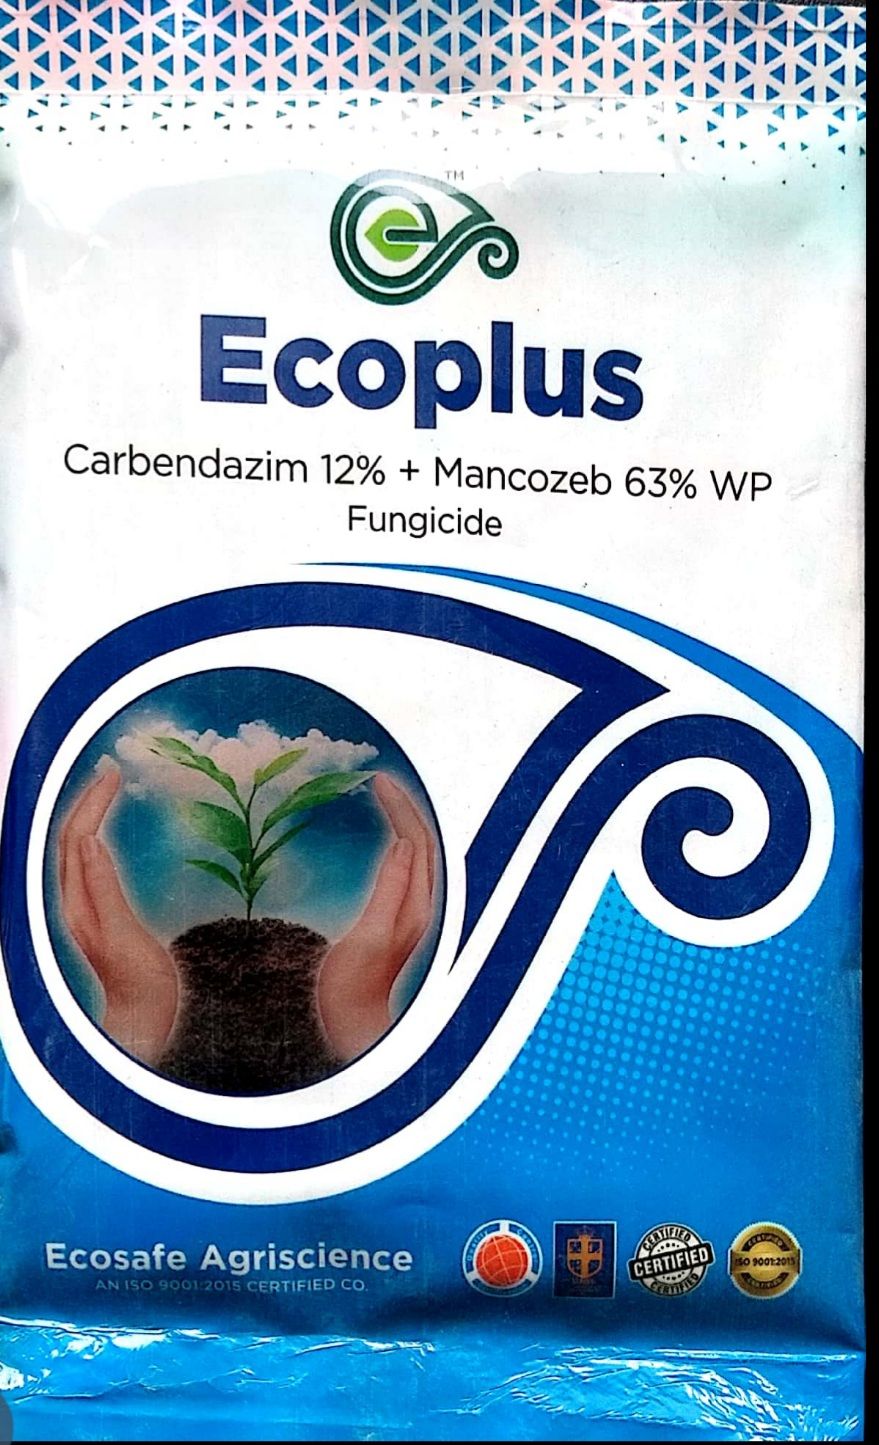 Ecoplus